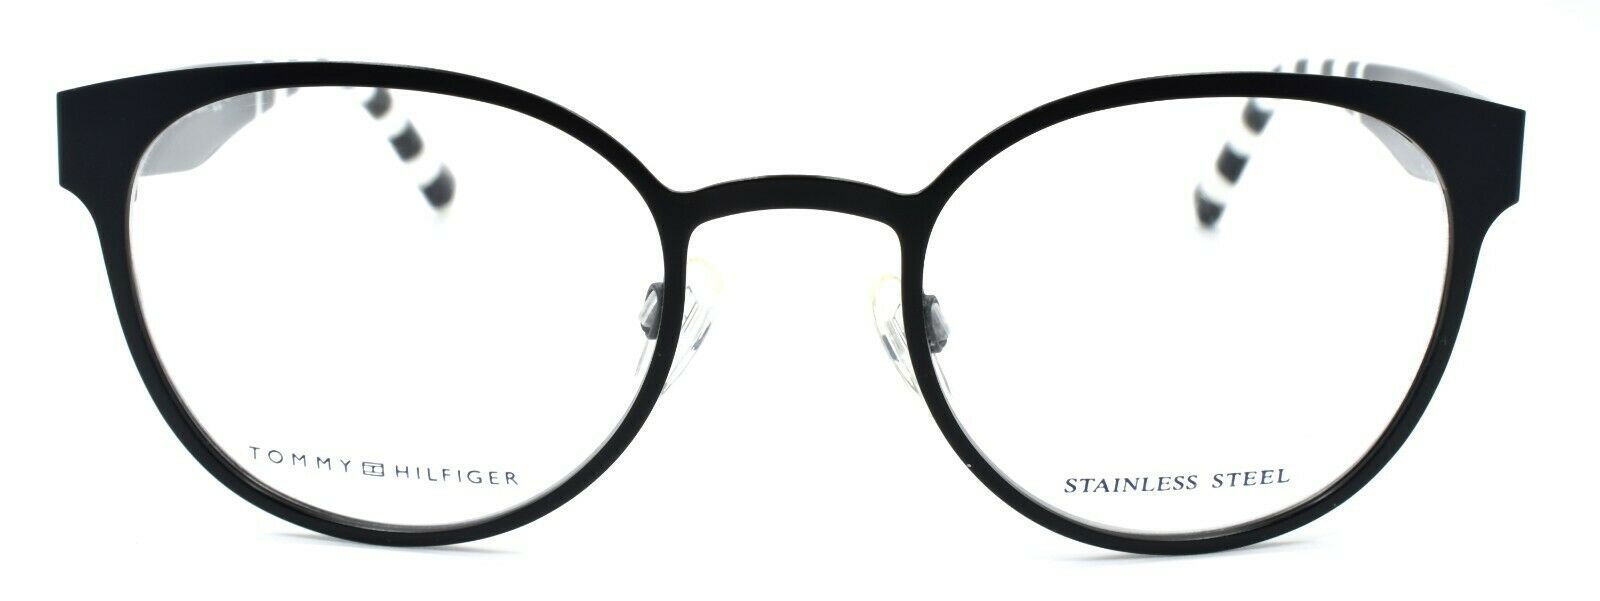 2-TOMMY HILFIGER TH 1484 003 Women's Eyeglasses Frames 49-21-140 Matte Black-762753621221-IKSpecs